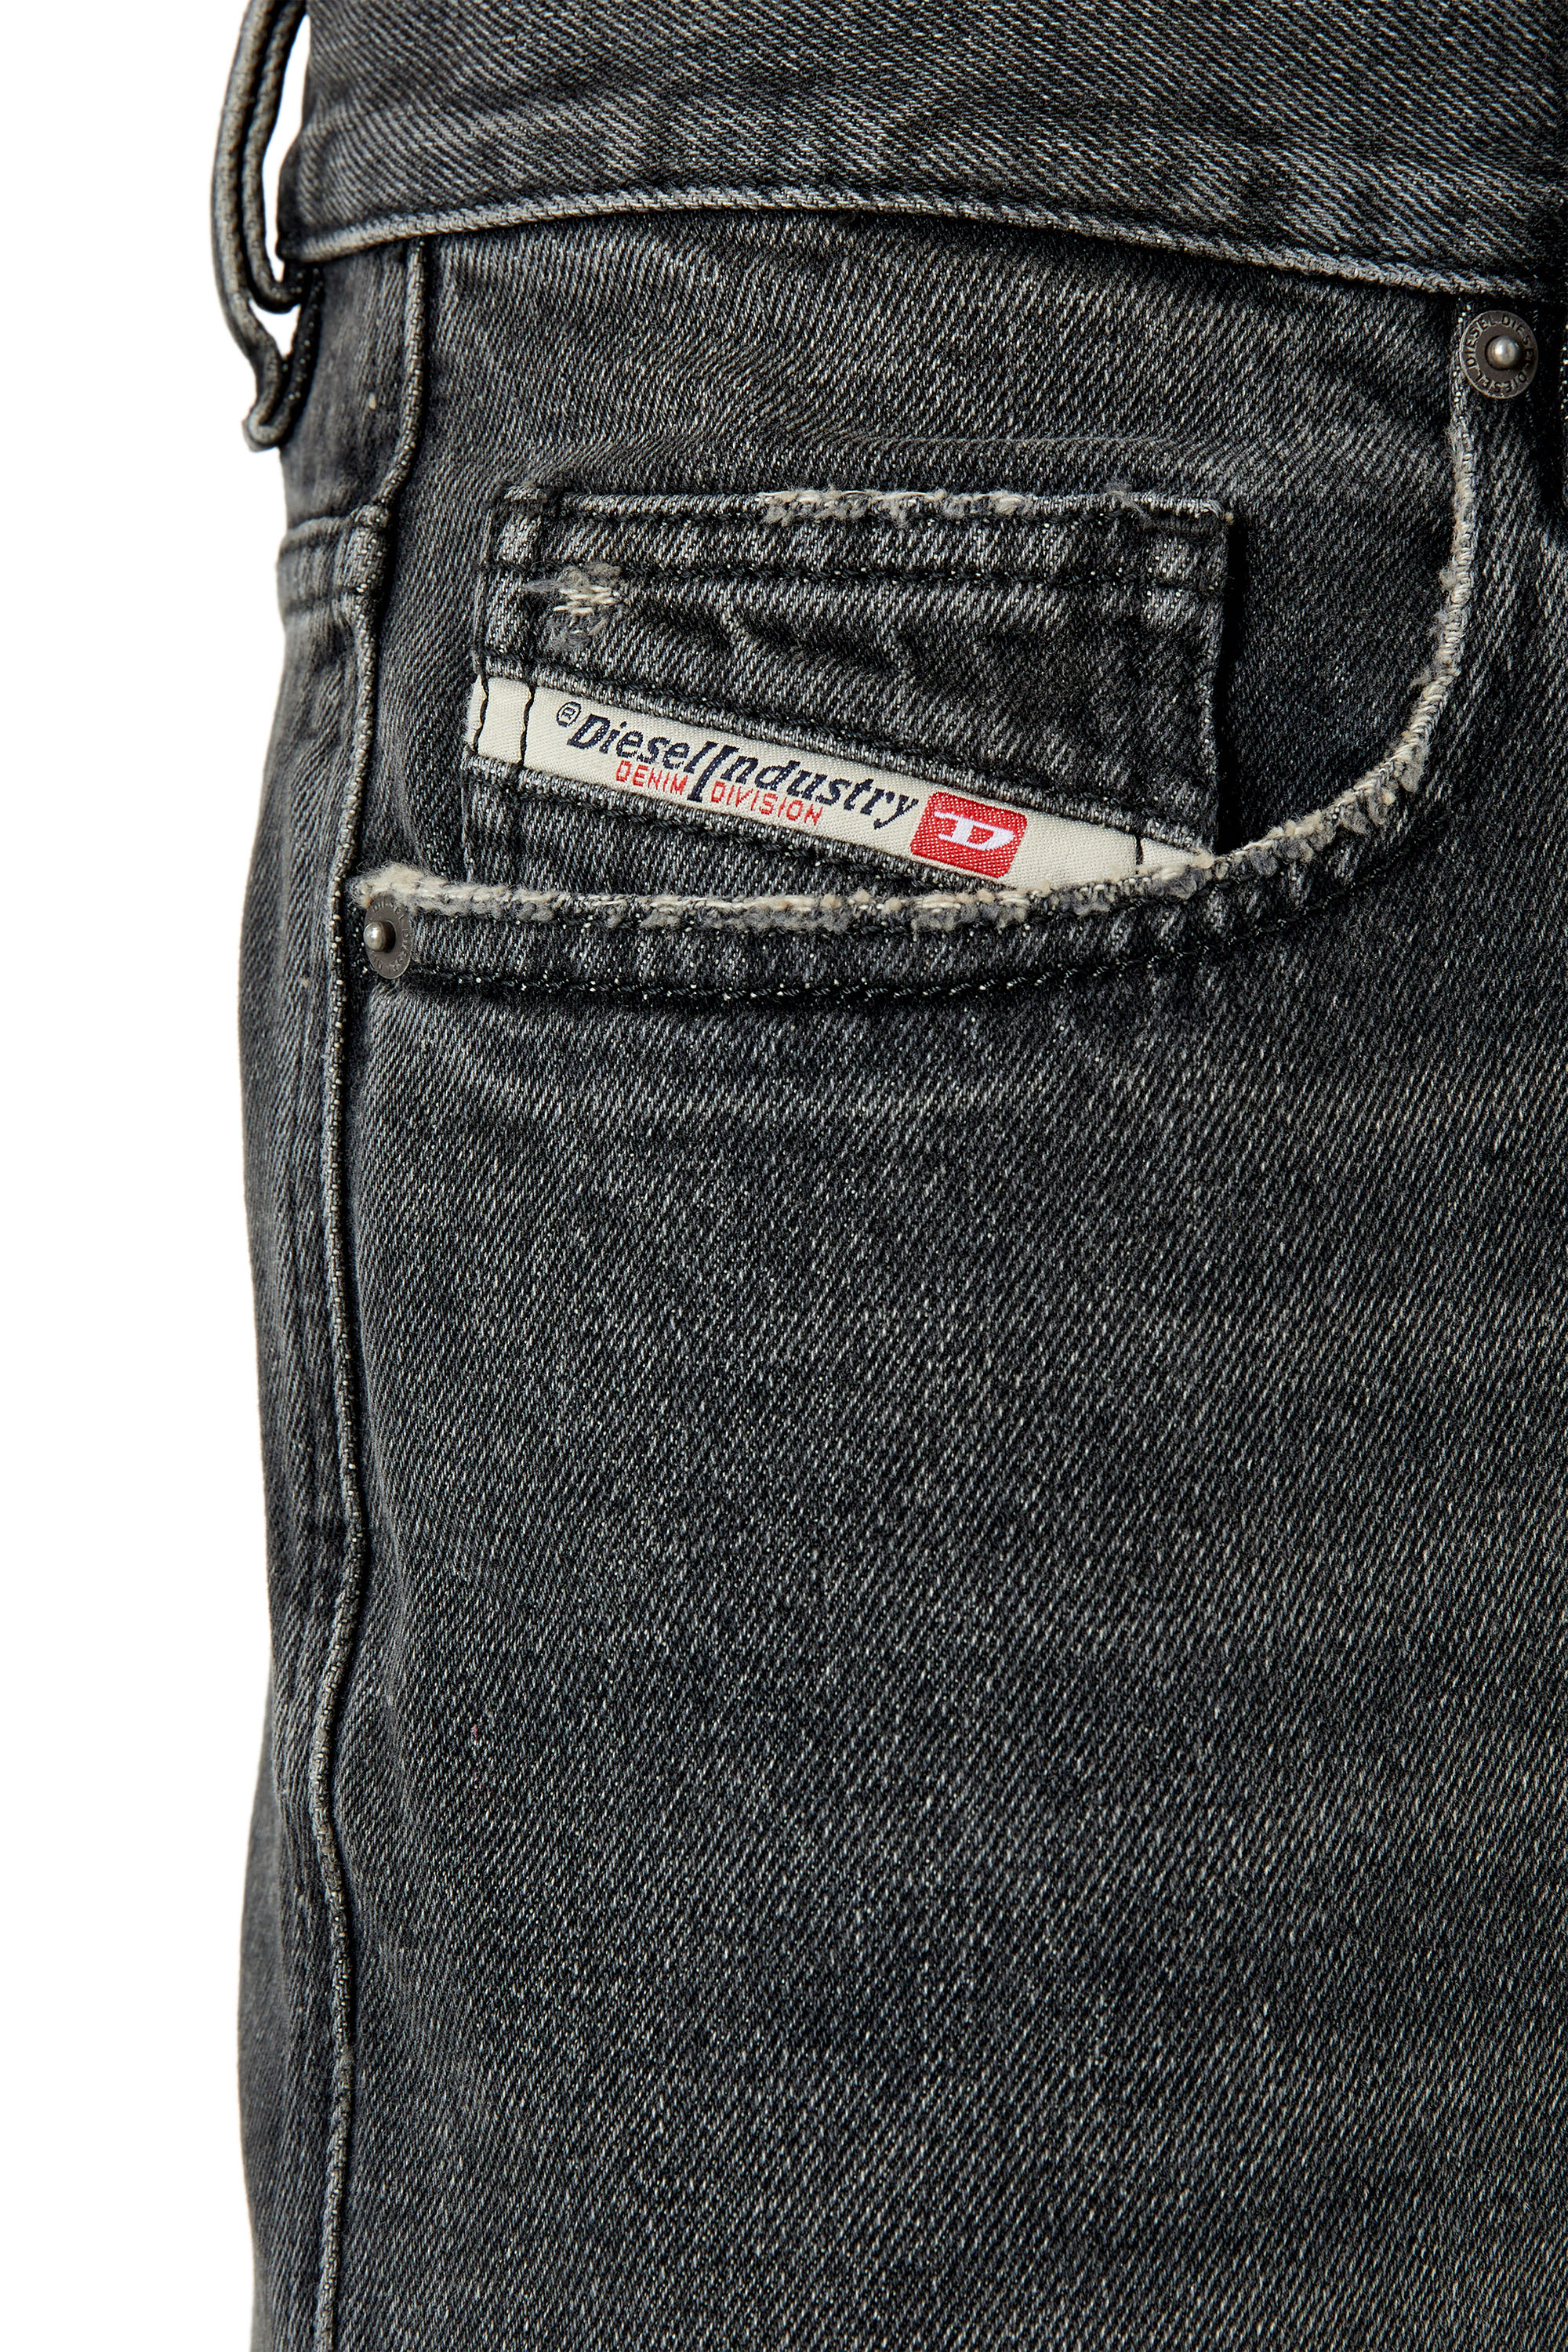 Diesel - Straight Jeans 2020 D-Viker 007K8,  - Image 5